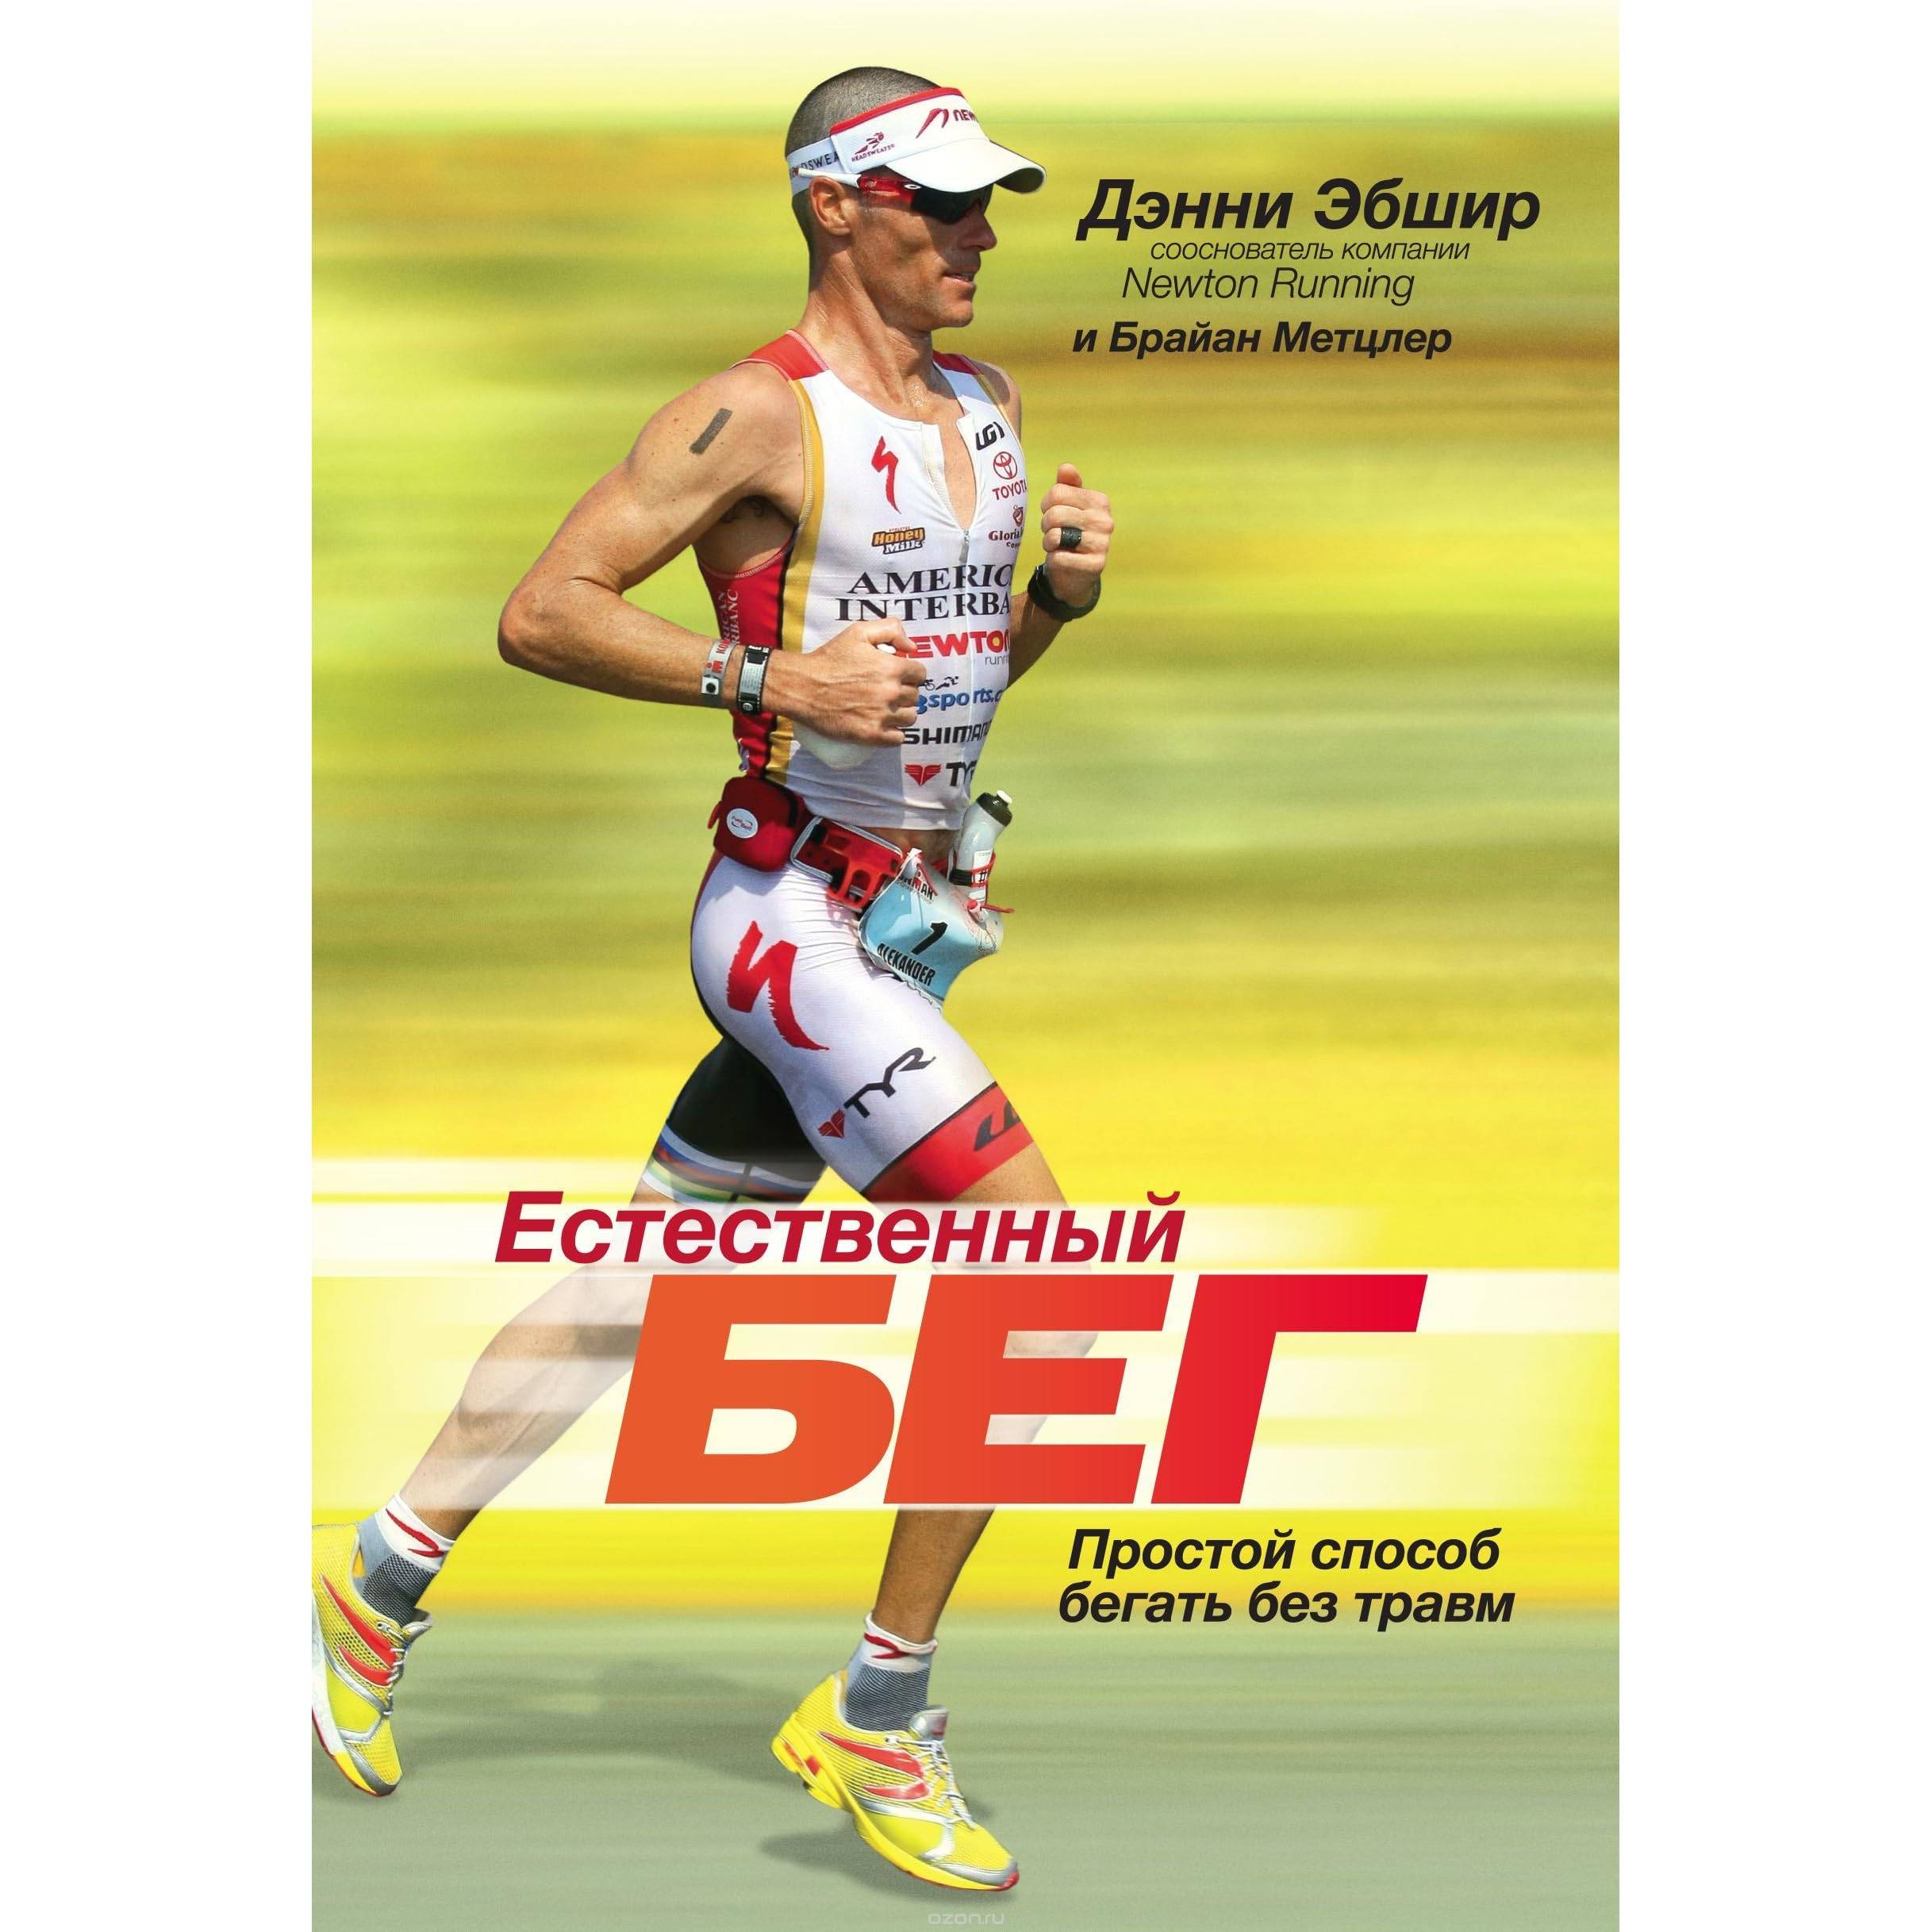 Естественный бег: 7 заповедей дэнни эбшира - "марафонец"